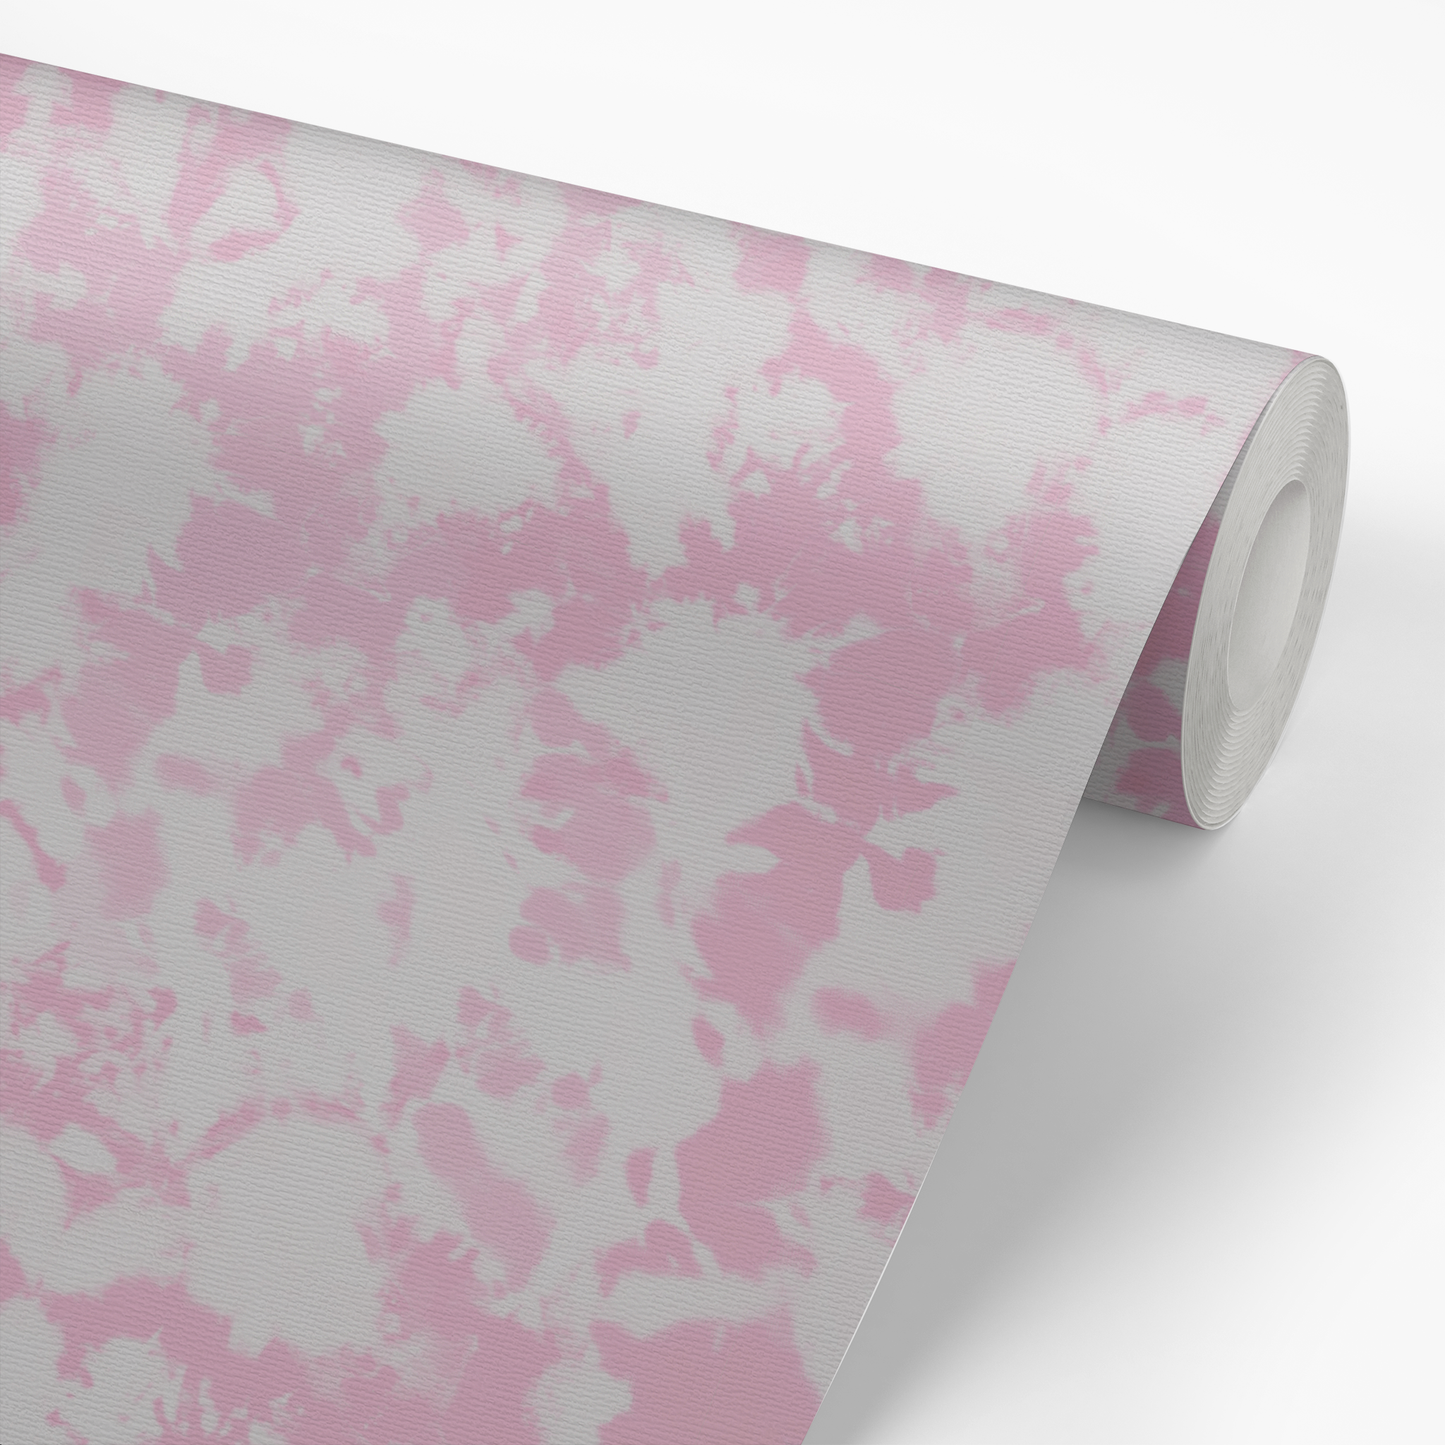 Tie Dye Wallpaper - Pink Gray